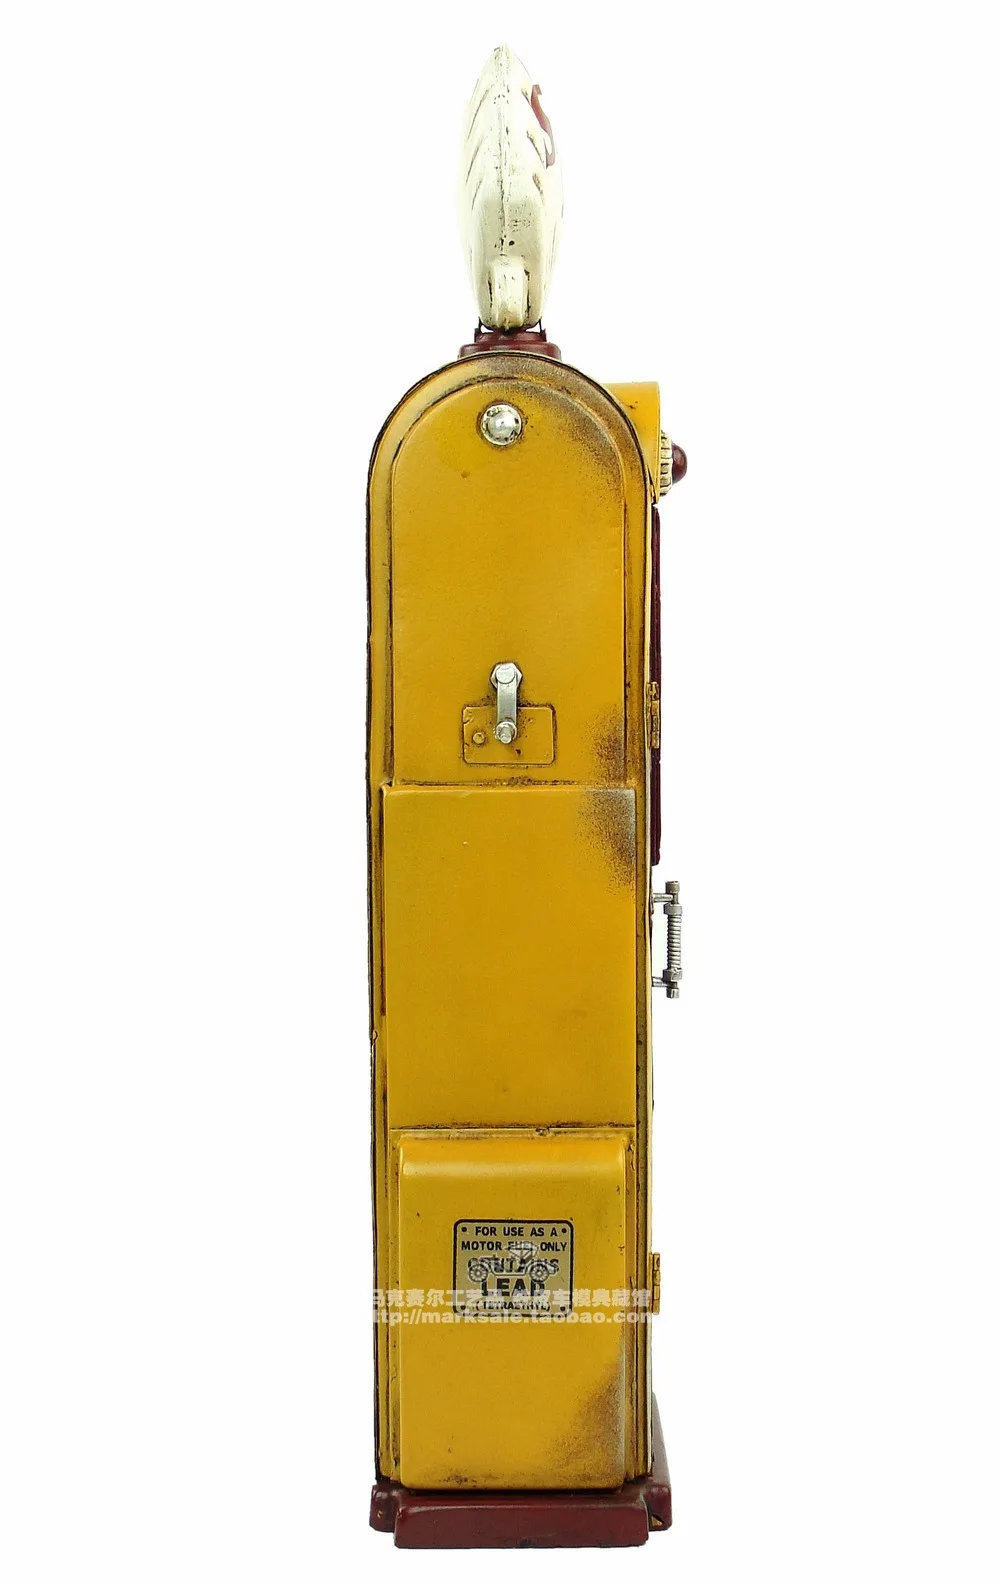 Античная классическая модель Ретро Винтаж кованого металла ремесла для украшения дома или подарок на день рождения Американский старый газовый насос